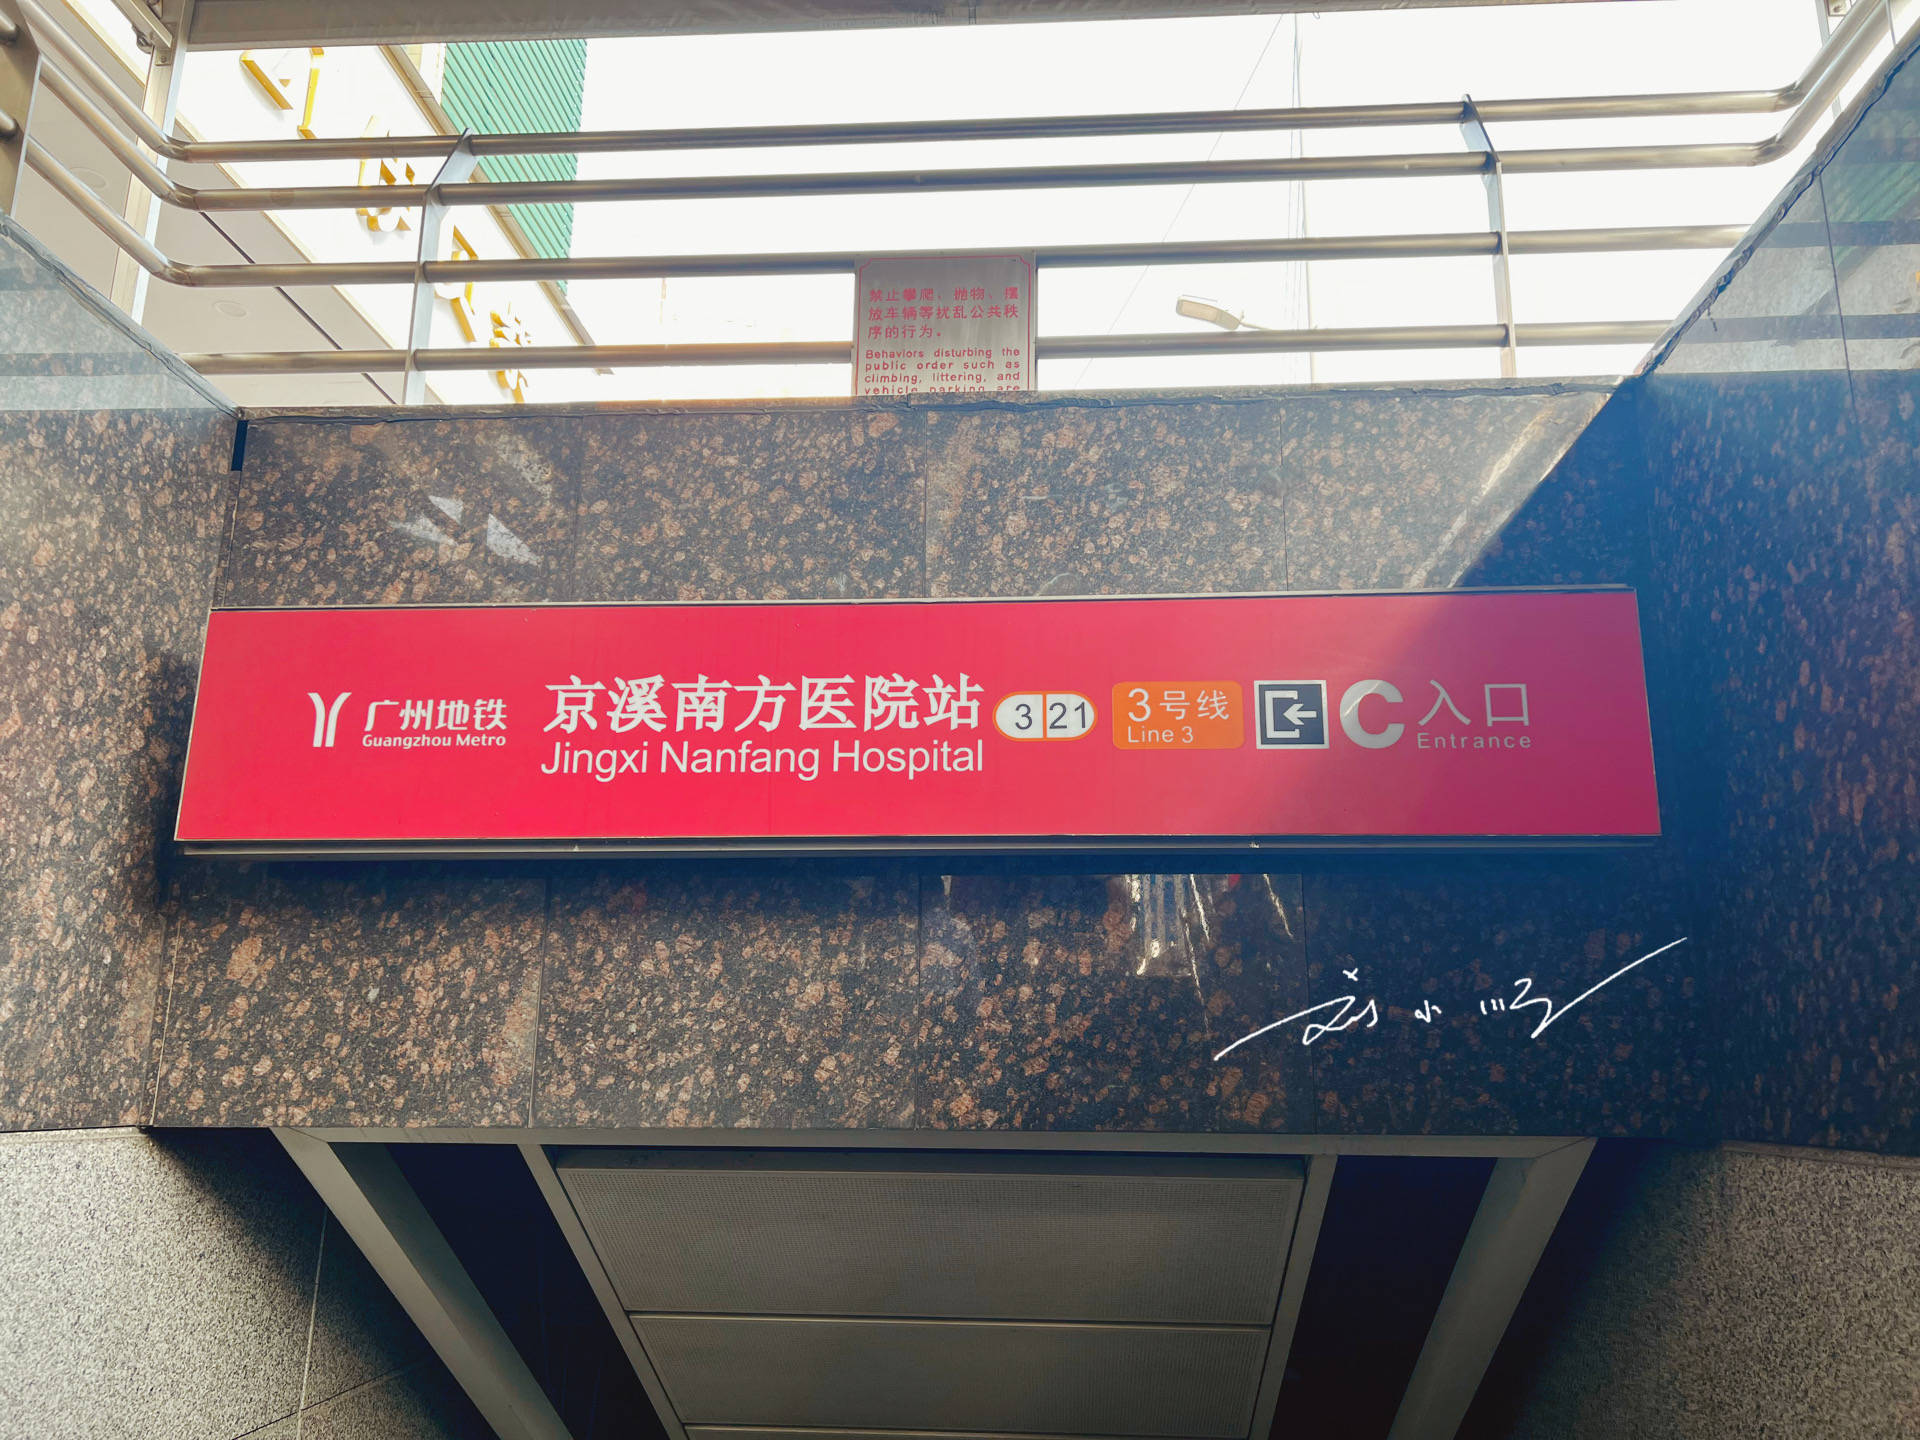 广州有个“京溪南方医院”地铁站，京溪是什么意思？好多人不知道